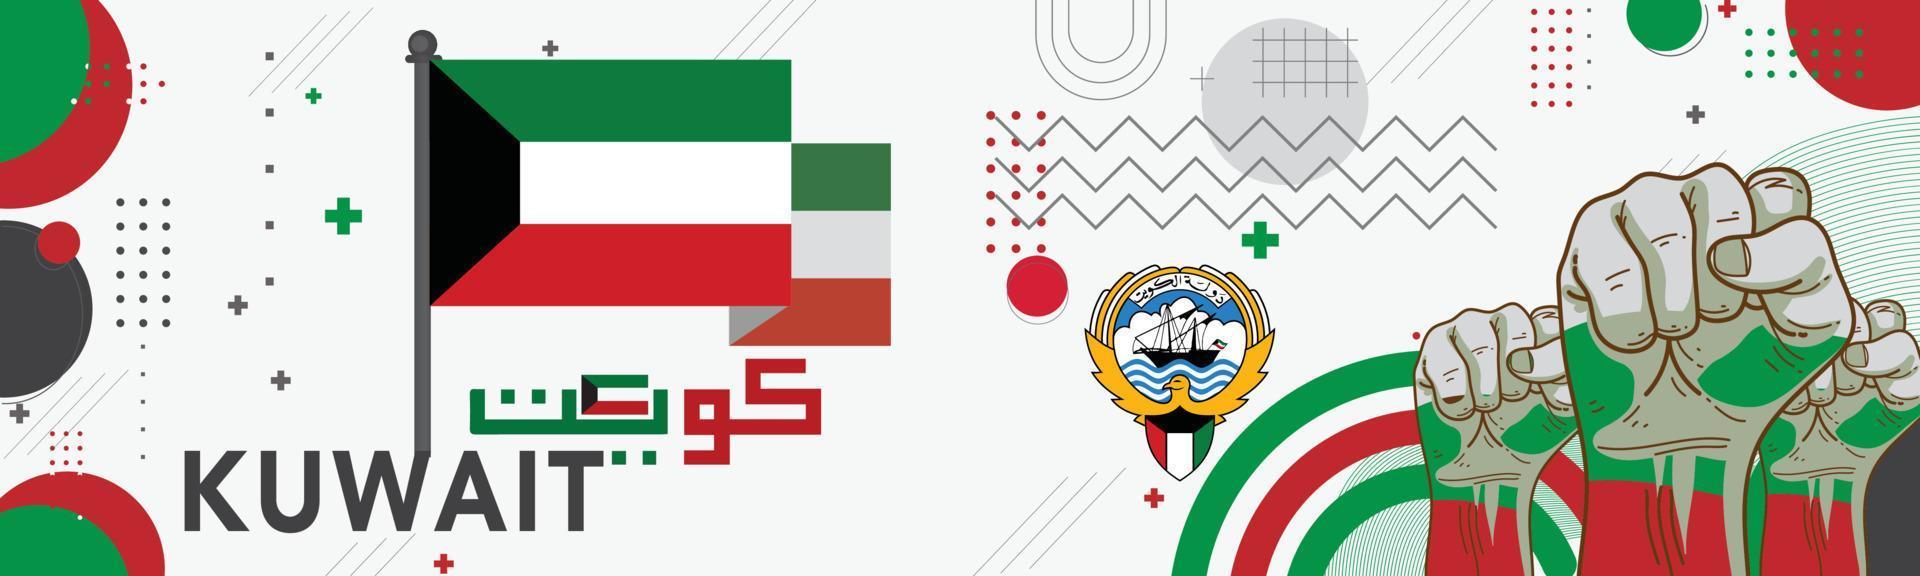 Banner Kuwait National Tag mit es ist Name im Arabisch Kalligraphie. kuwaiti Flagge Farben rot Grün schwarz Thema Hintergrund mit geometrisch abstrakt retro modern Design und traditionell Symbole. Karte Sehenswürdigkeiten vektor